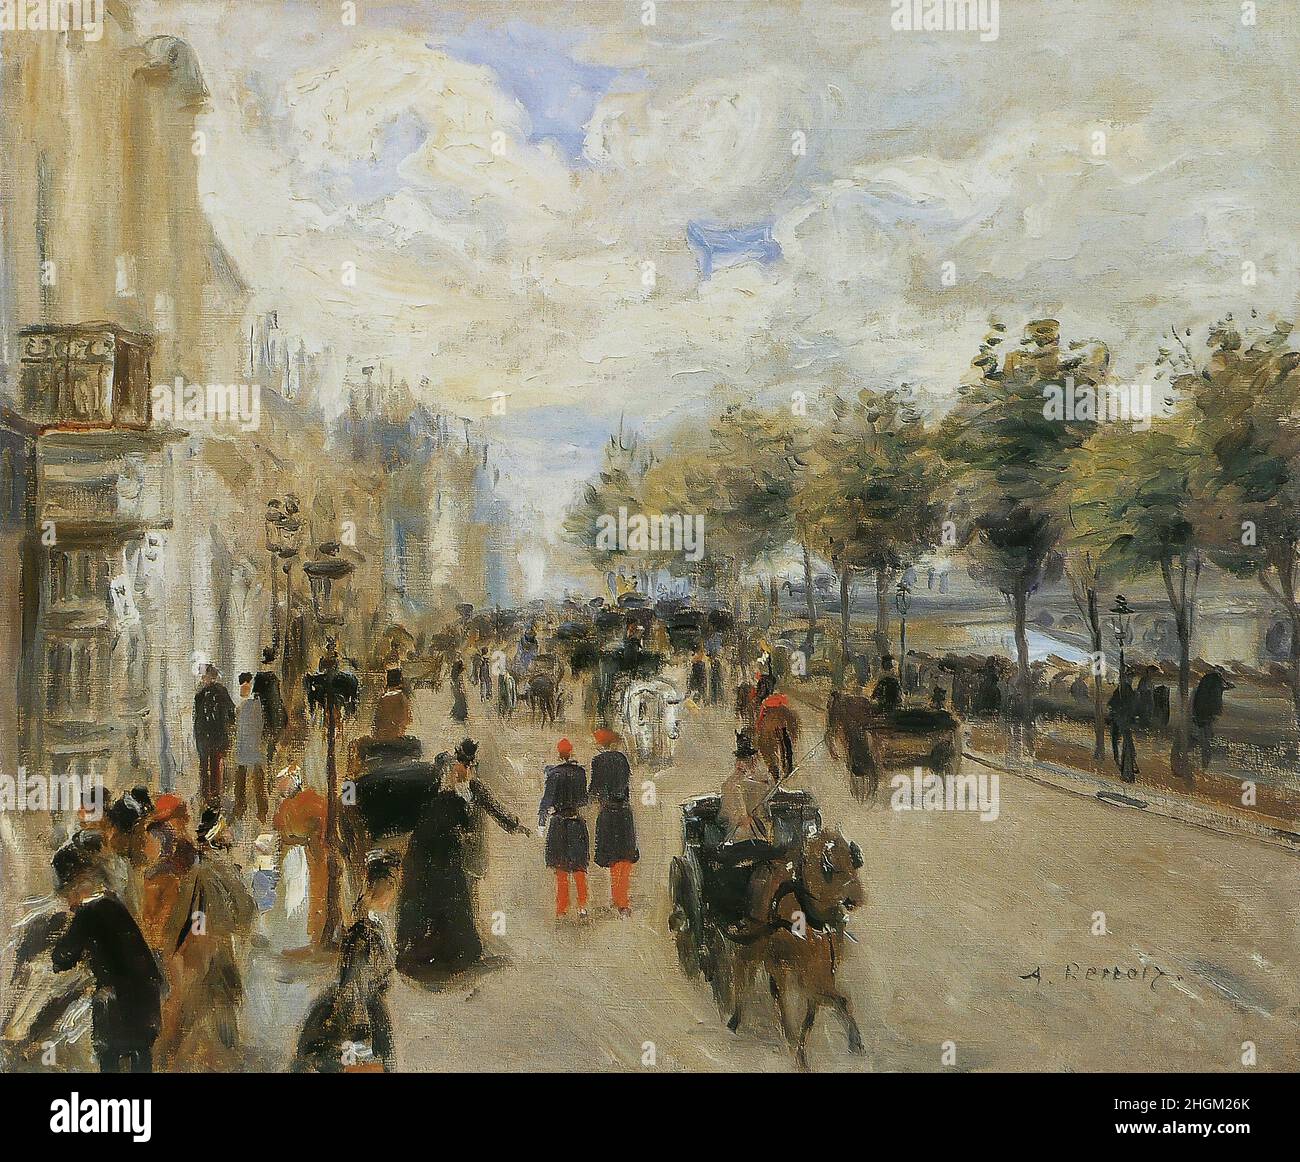 Renoir Auguste - Private Collection - Paris, le quai Malaquais - 1874c. - Oil on canvas 38 x 46 cm Stock Photo